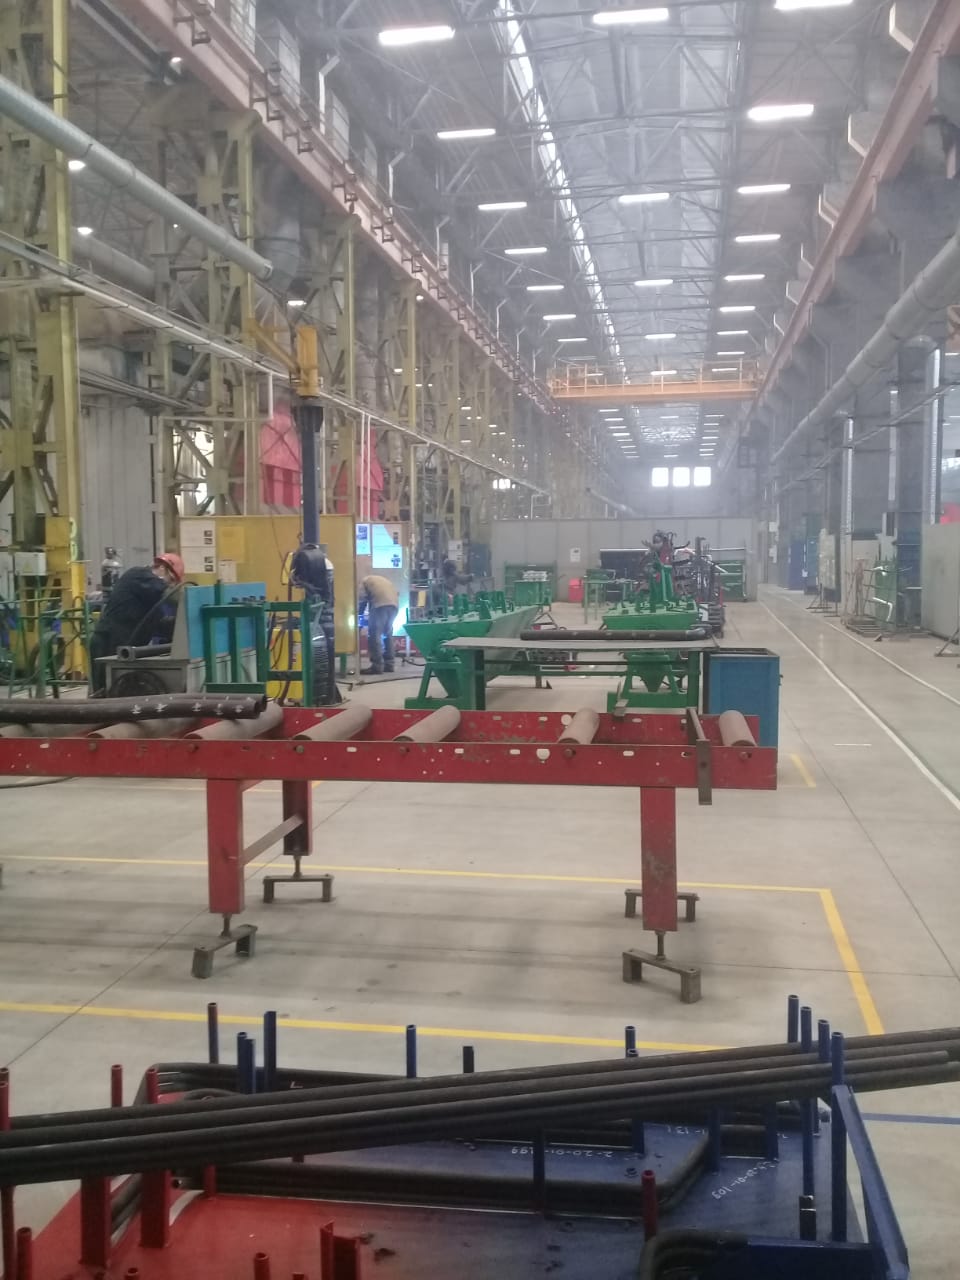  جولة لليوم السابع بمصنع جرارات السكة الحديد الروسى (26)